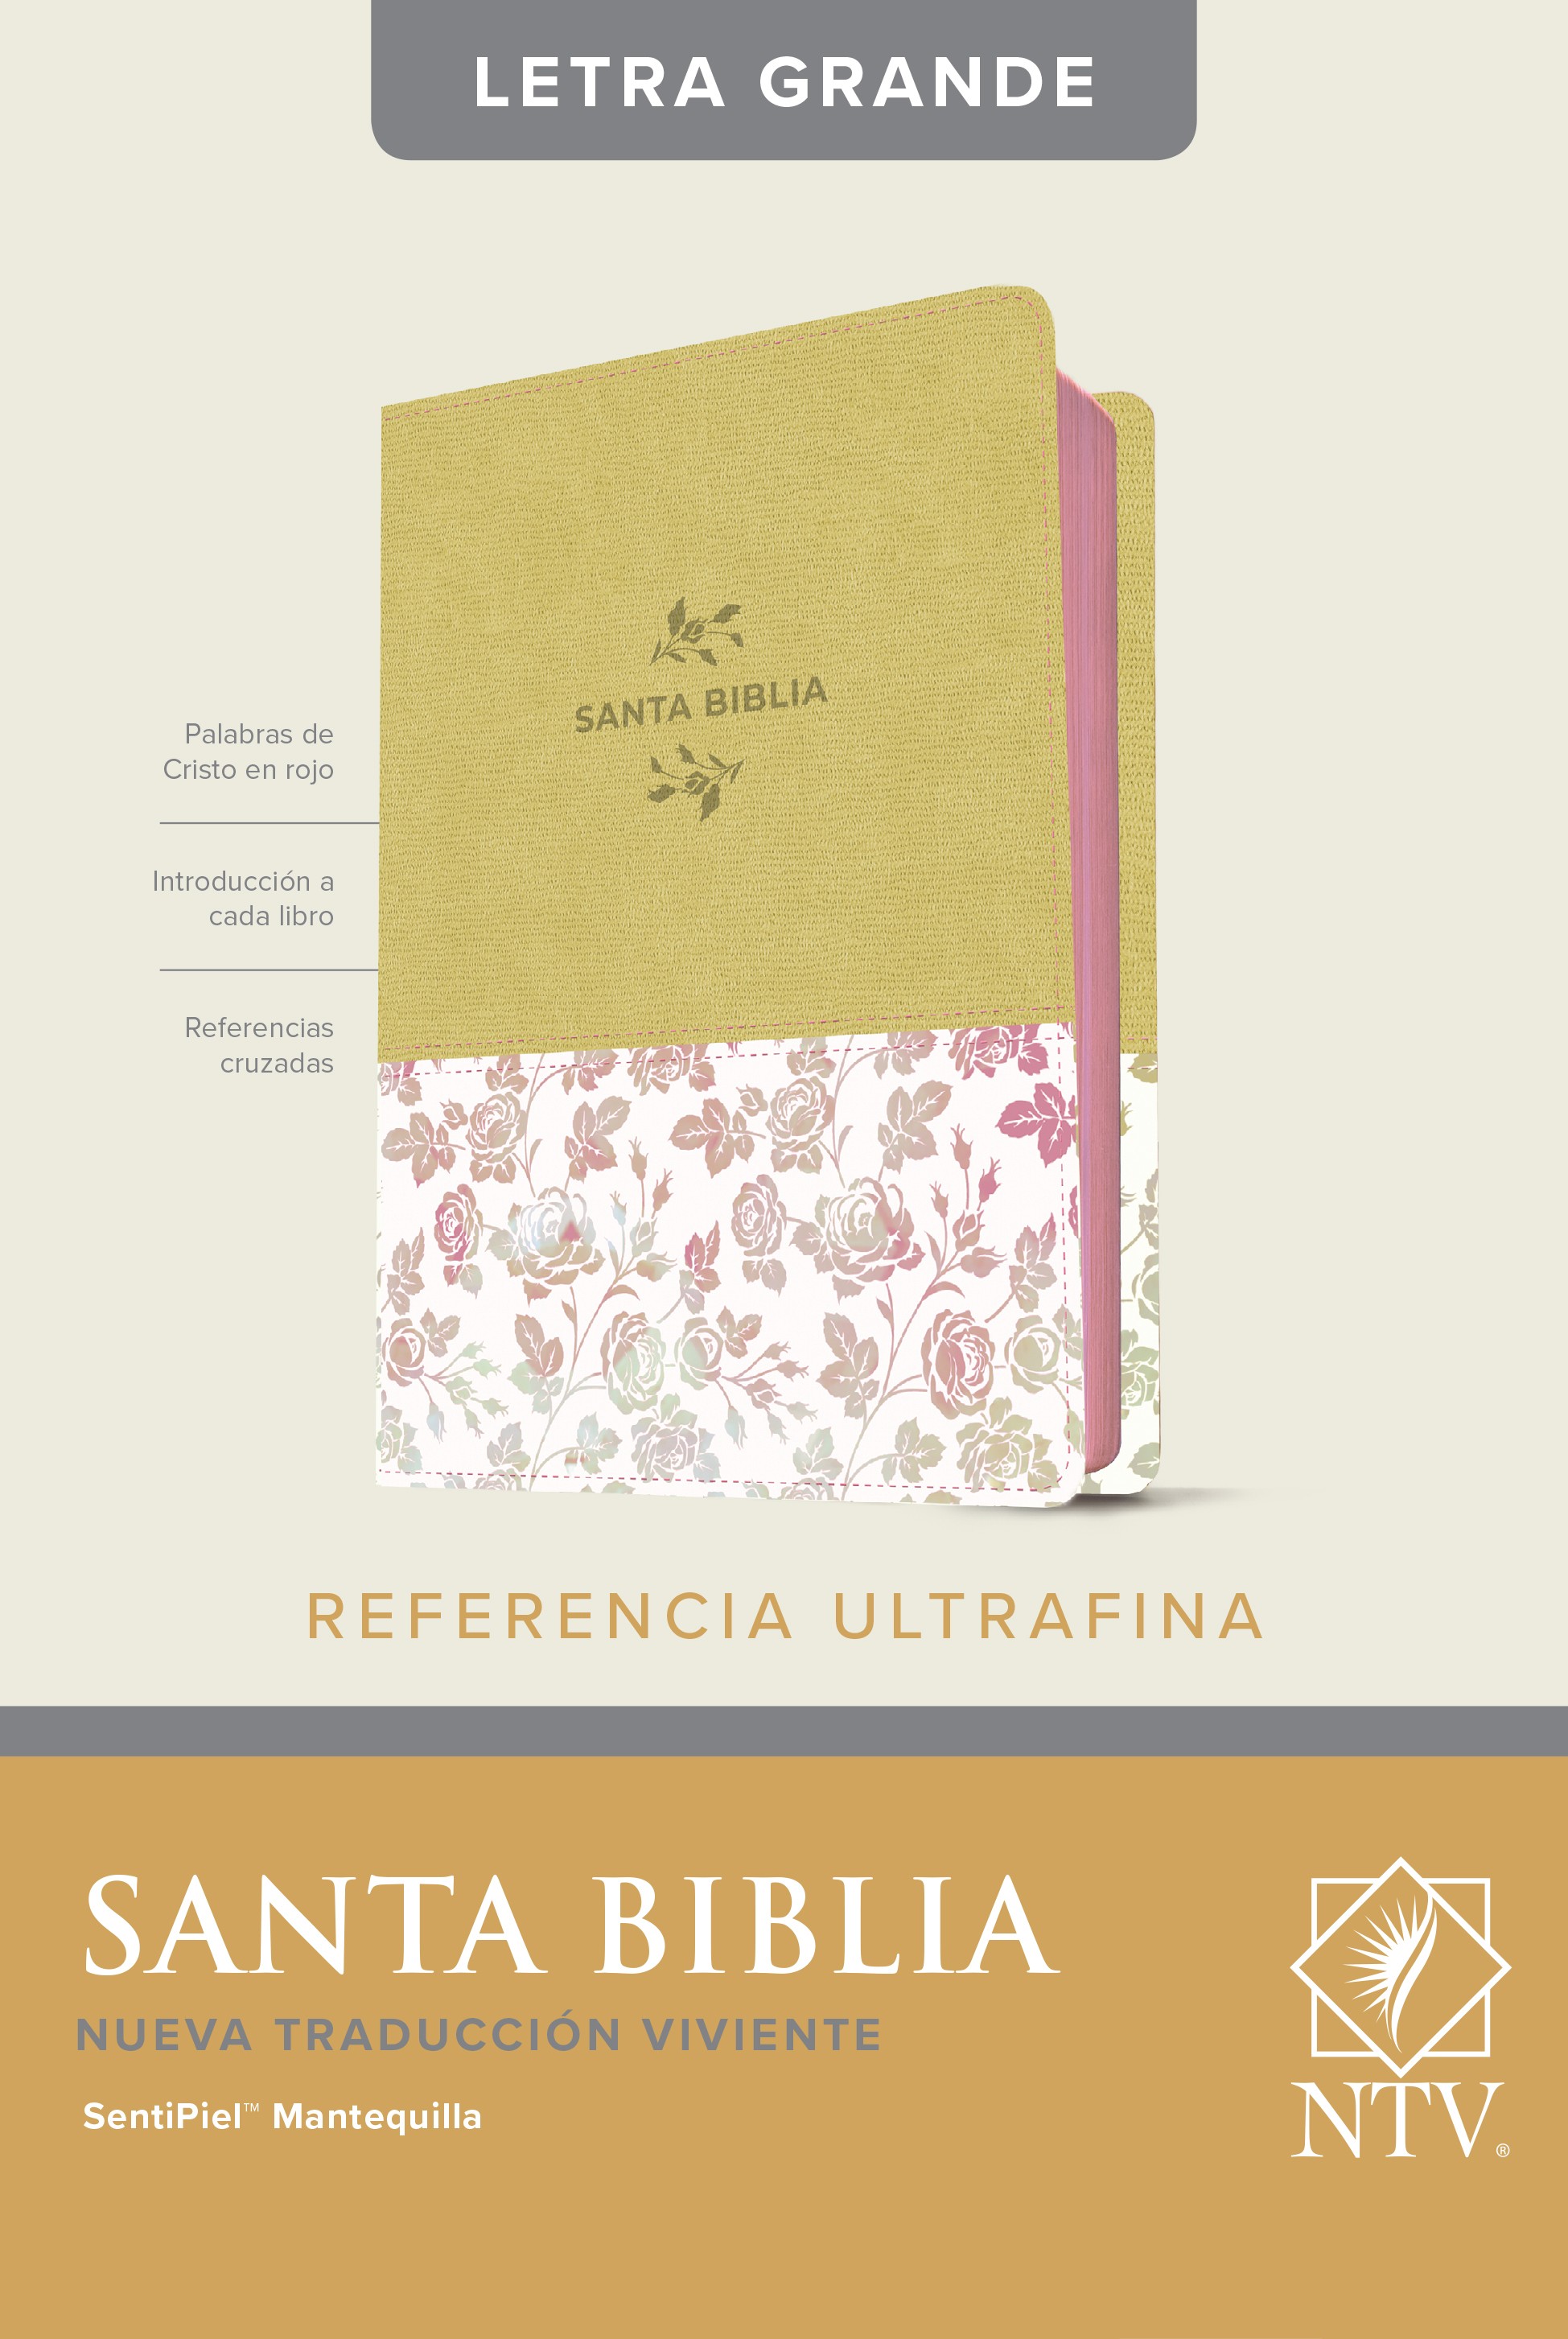  Santa Biblia NTV, Edición de referencia ultrafina, letra grande (SentiPiel, Mantequilla, Letra Roja)